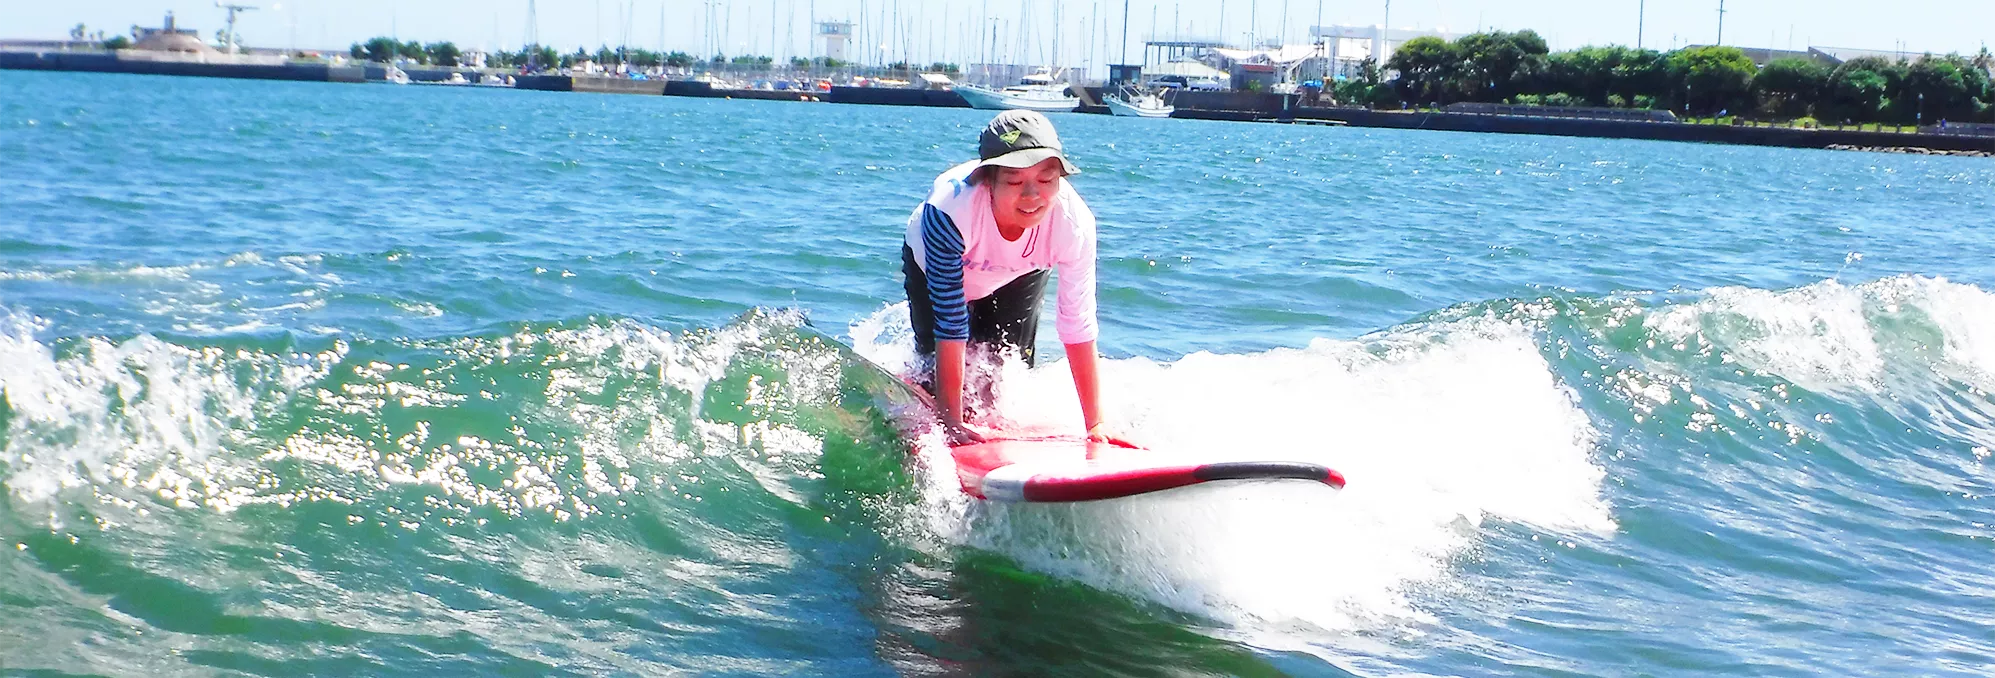 湘南の穏やかな波でリラックスしながらサーフィンを楽しむ女性のイメージ